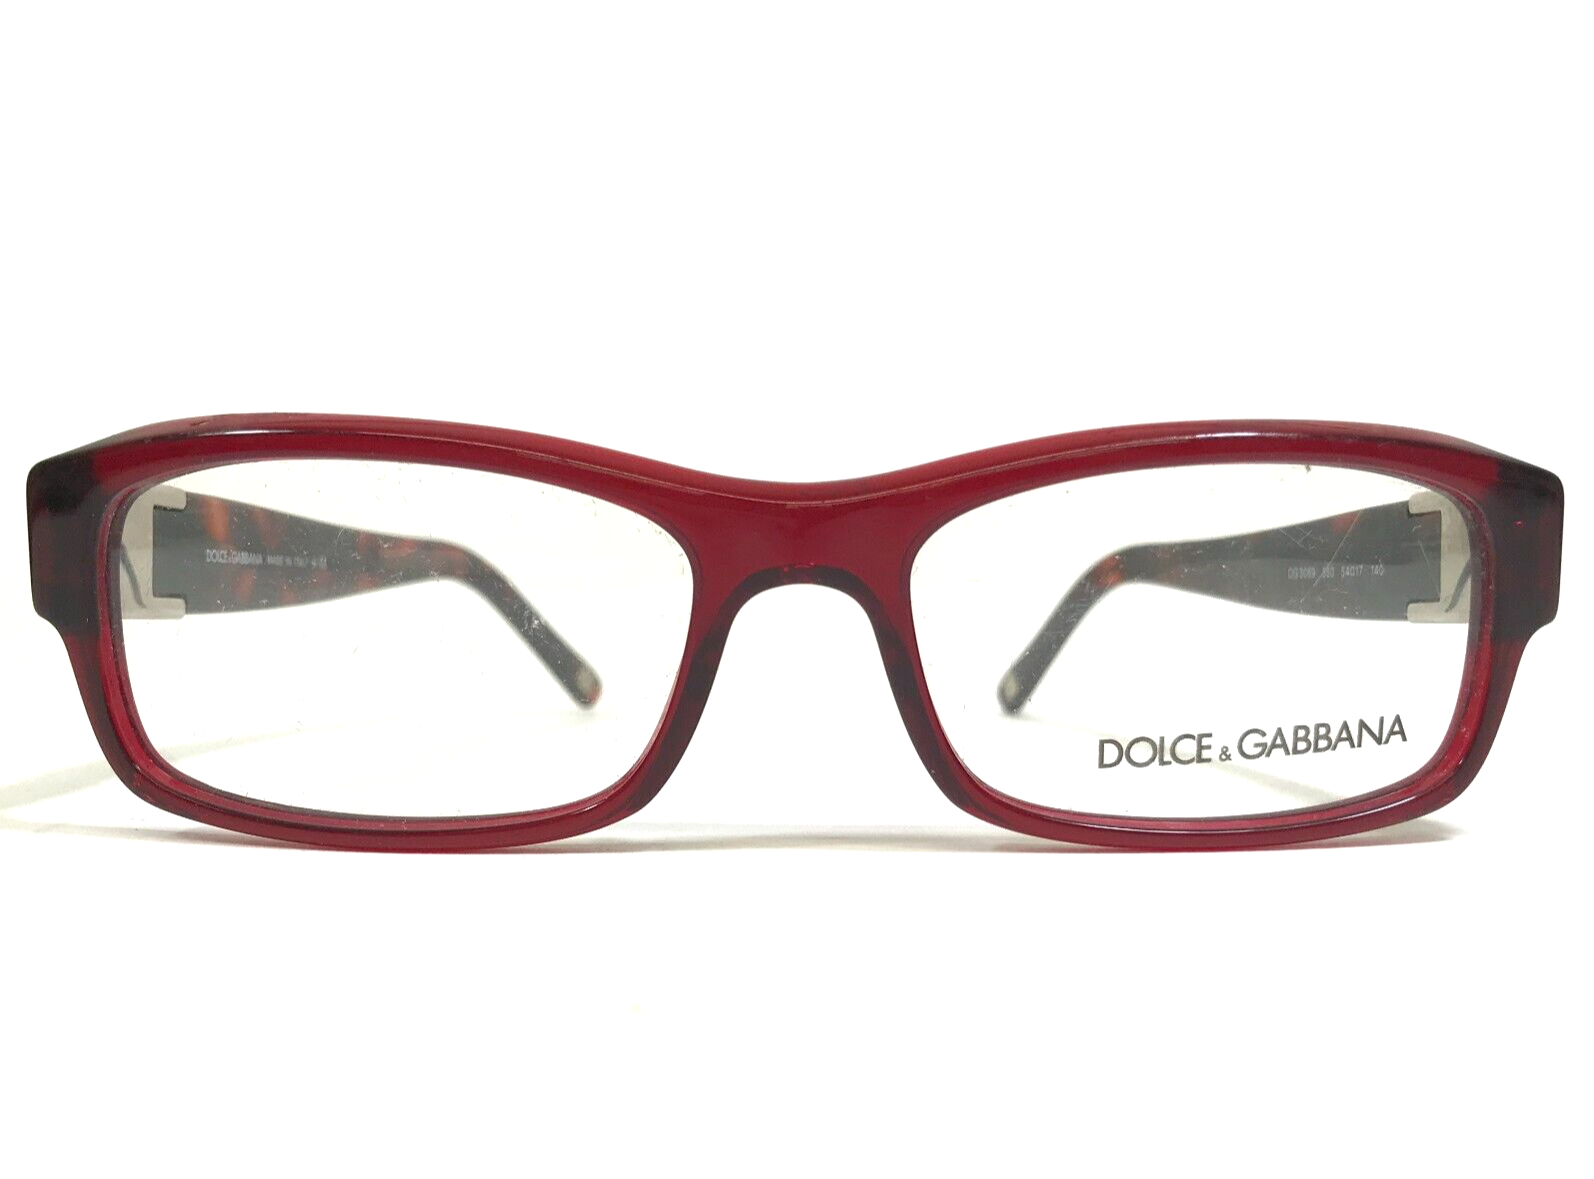 Dolce & Gabbana Eyeglasses Frames DG3069 550 Brown Tortoise Clear Red 54-17-140 - $121.33